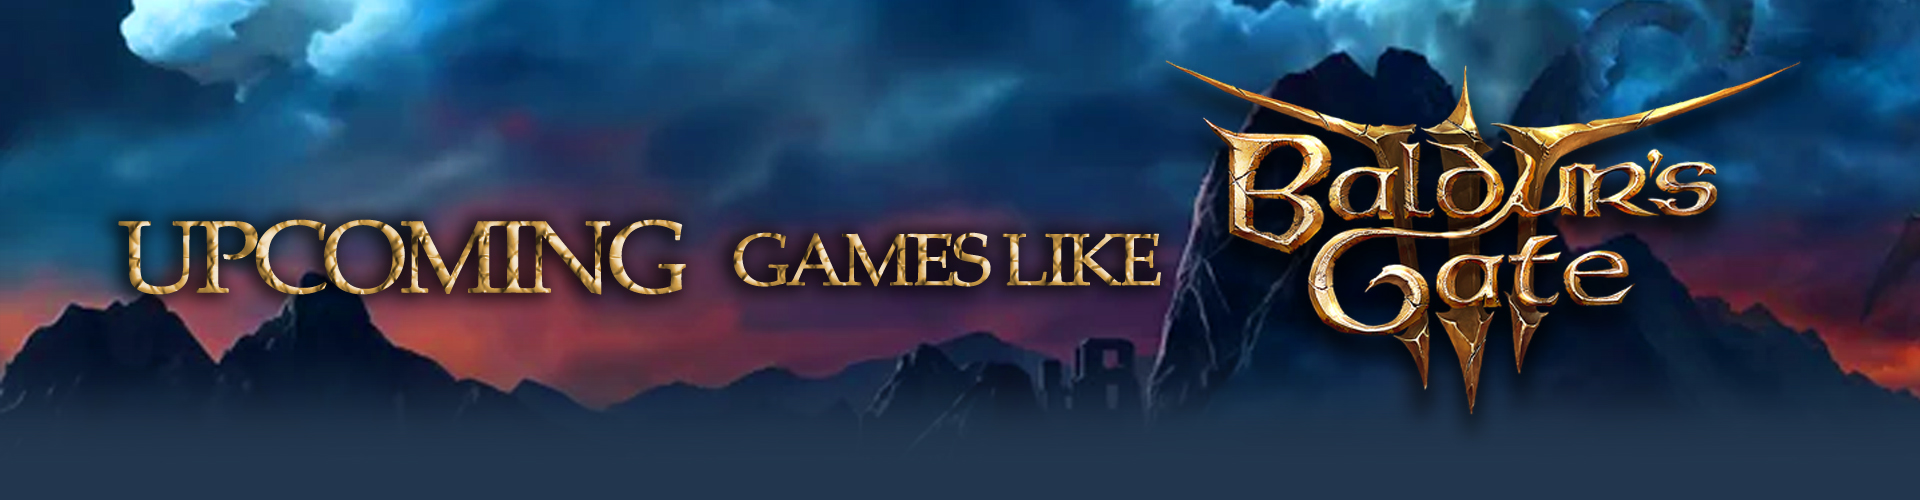 Les prochains jeux de Dark Fantasy comme Baldur's Gate 3